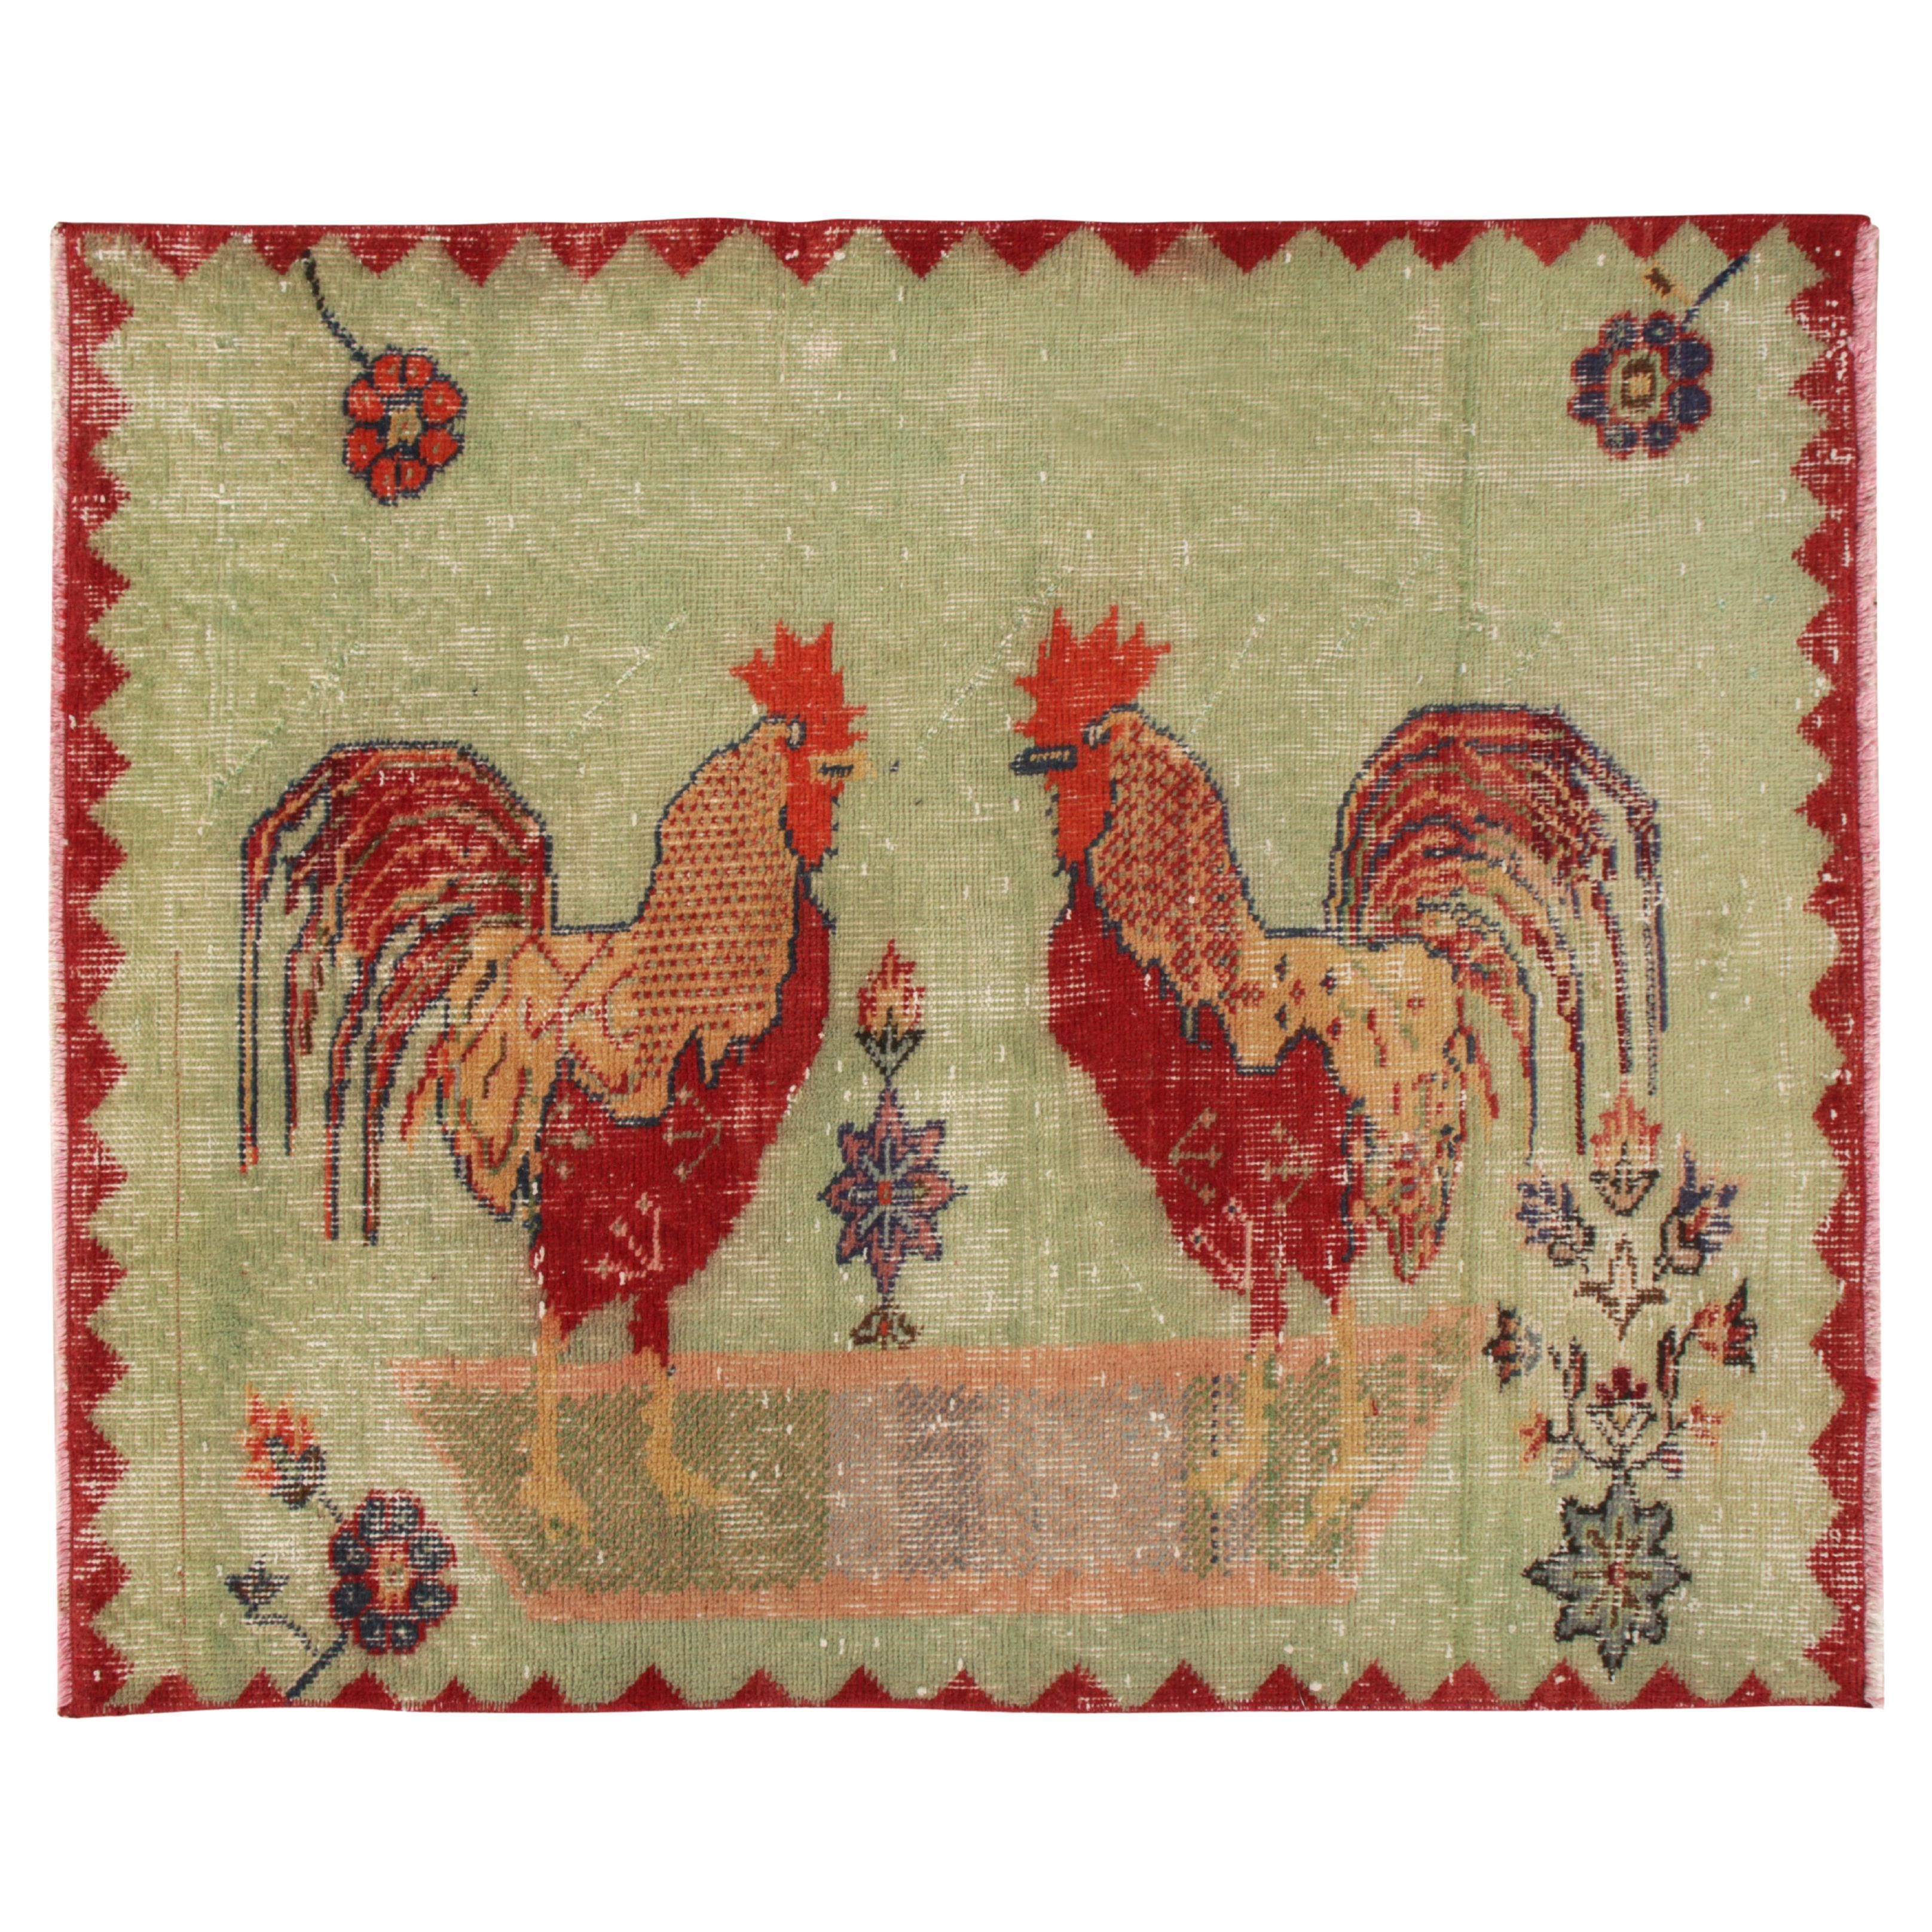 Vintage Zeki Müren Teppich in Grün, Rot, mit Hahn-Muster von Rug & Kilim